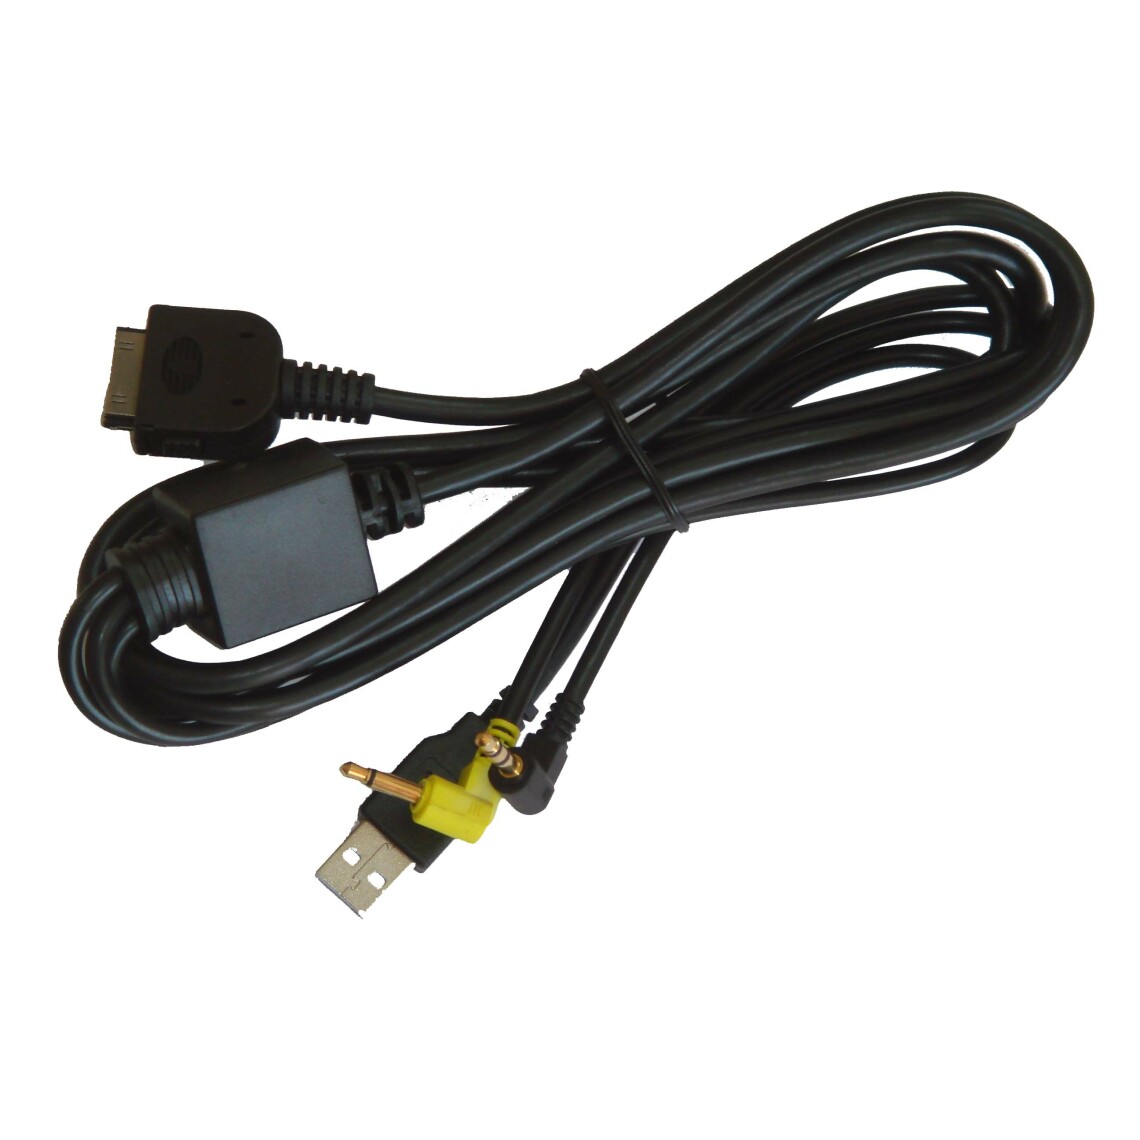 Vhbw - vhbw Câble adaptateur de ligne AUX Radio compatible avec Kenwood KVT-829DVDY, KVT-839DVD voiture, véhicule, USB, prise jack AV Line-In - Alimentation modulaire